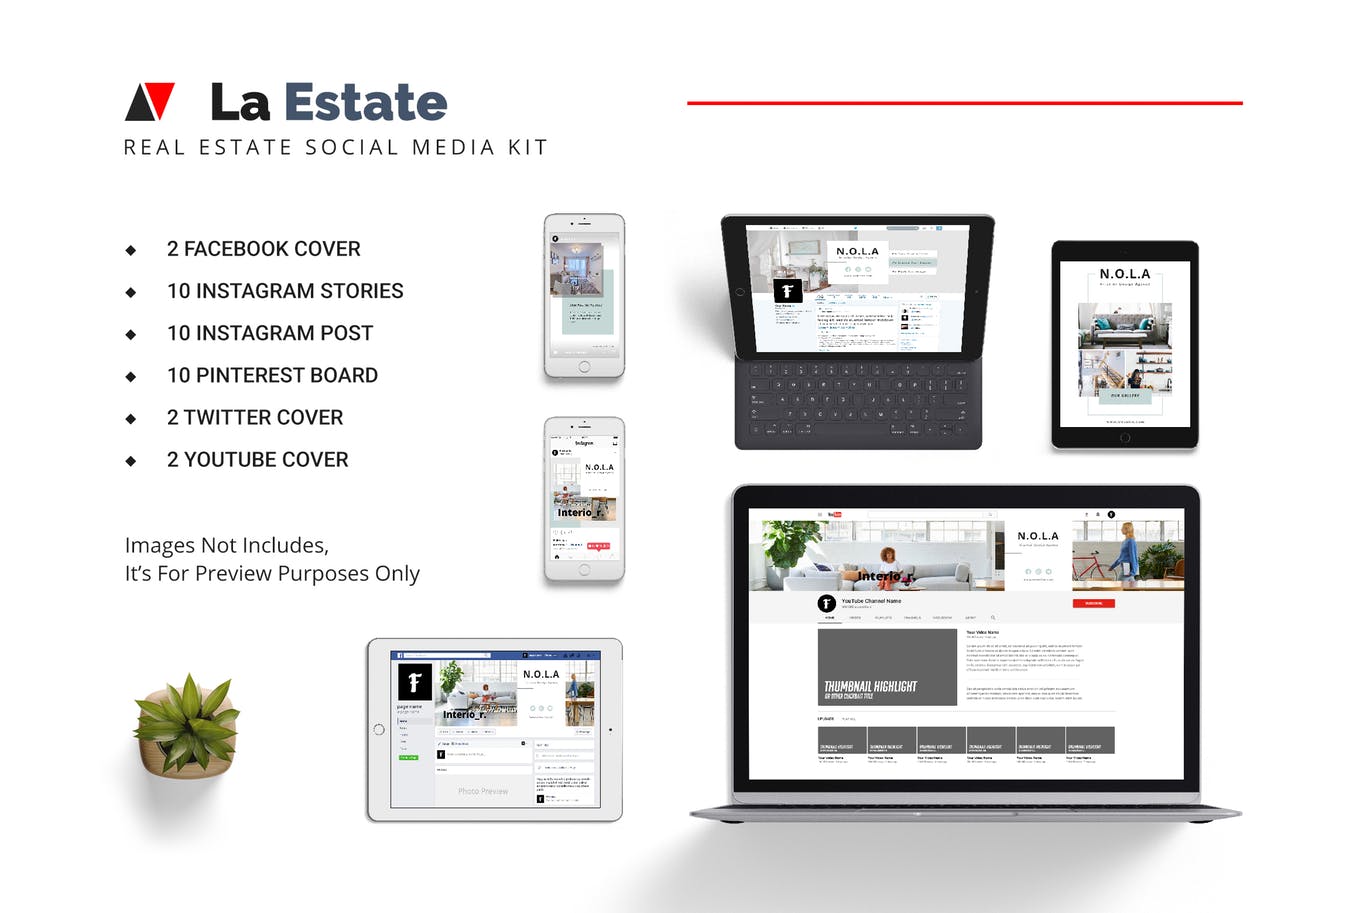 房地产经销商/房产中介企业社交媒体推广设计素材包 La Estate Real Estate Social Media Kit插图